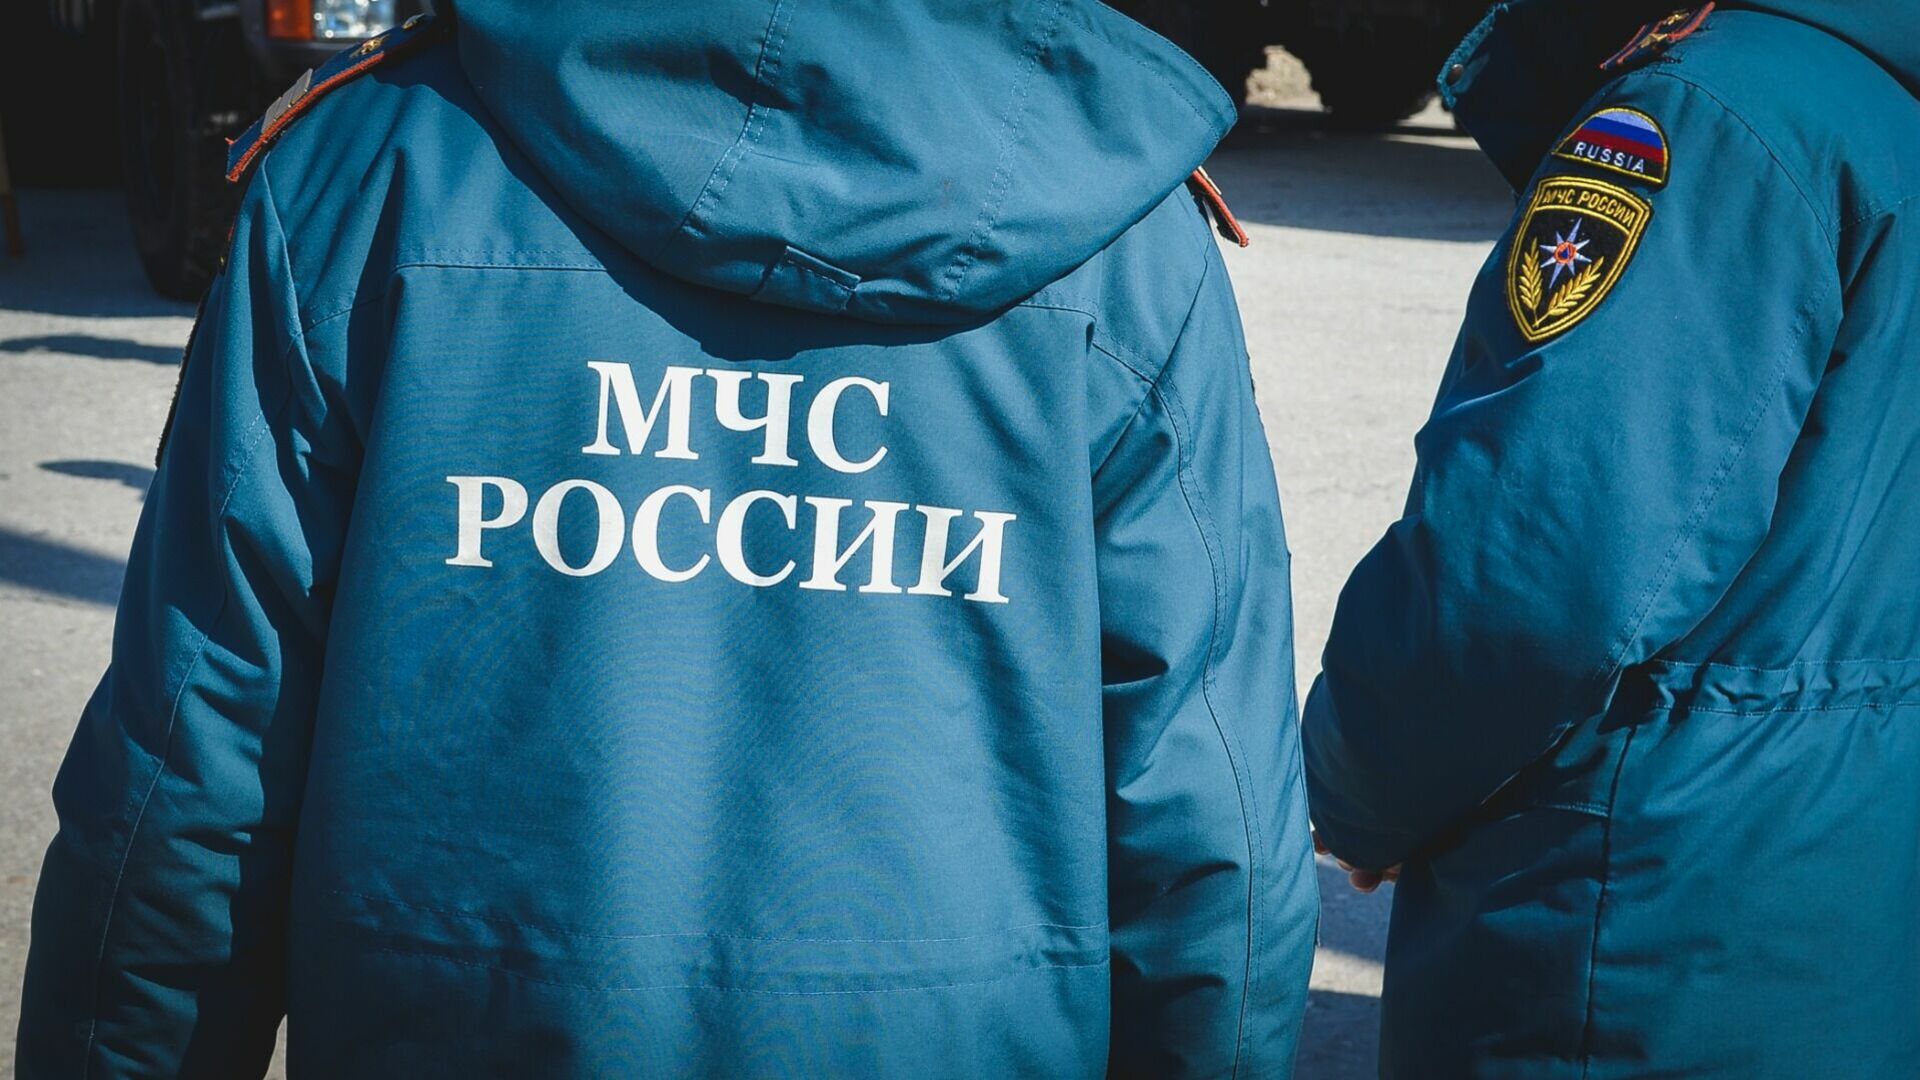 Четыре сотрудника нижегородского МЧС отправились на спецоперацию добровольцами